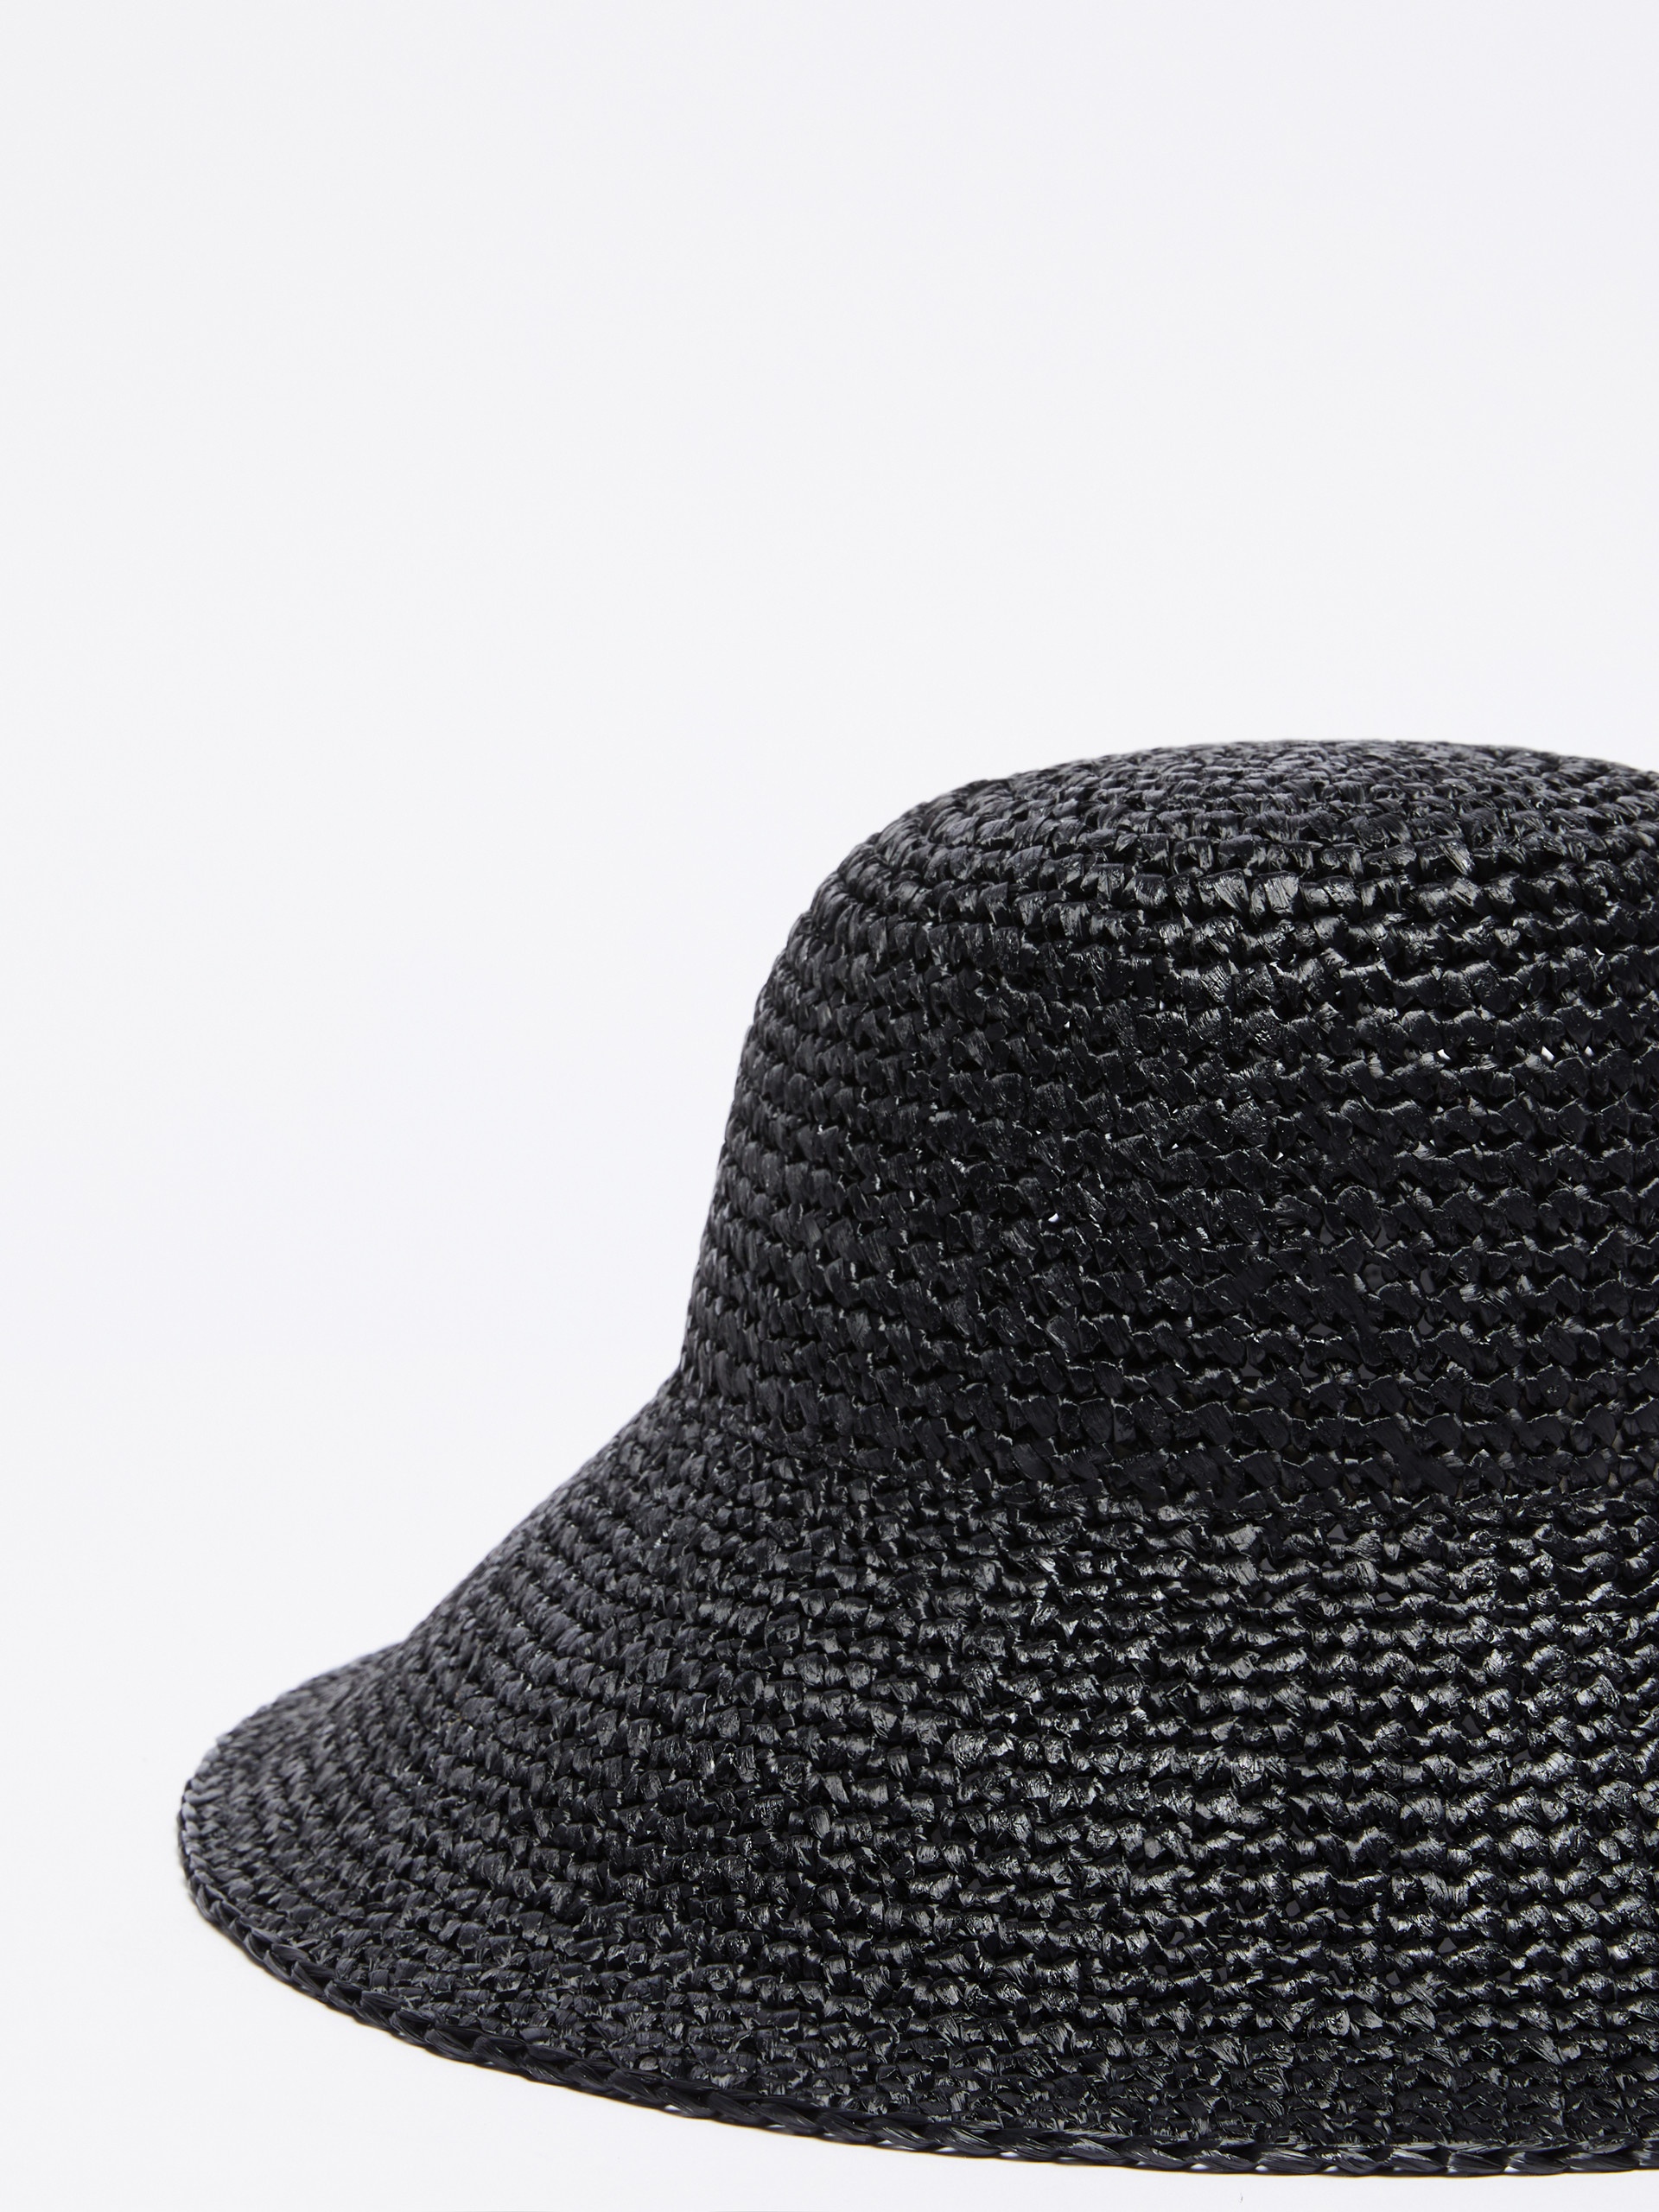 CARL Straw hat - 2